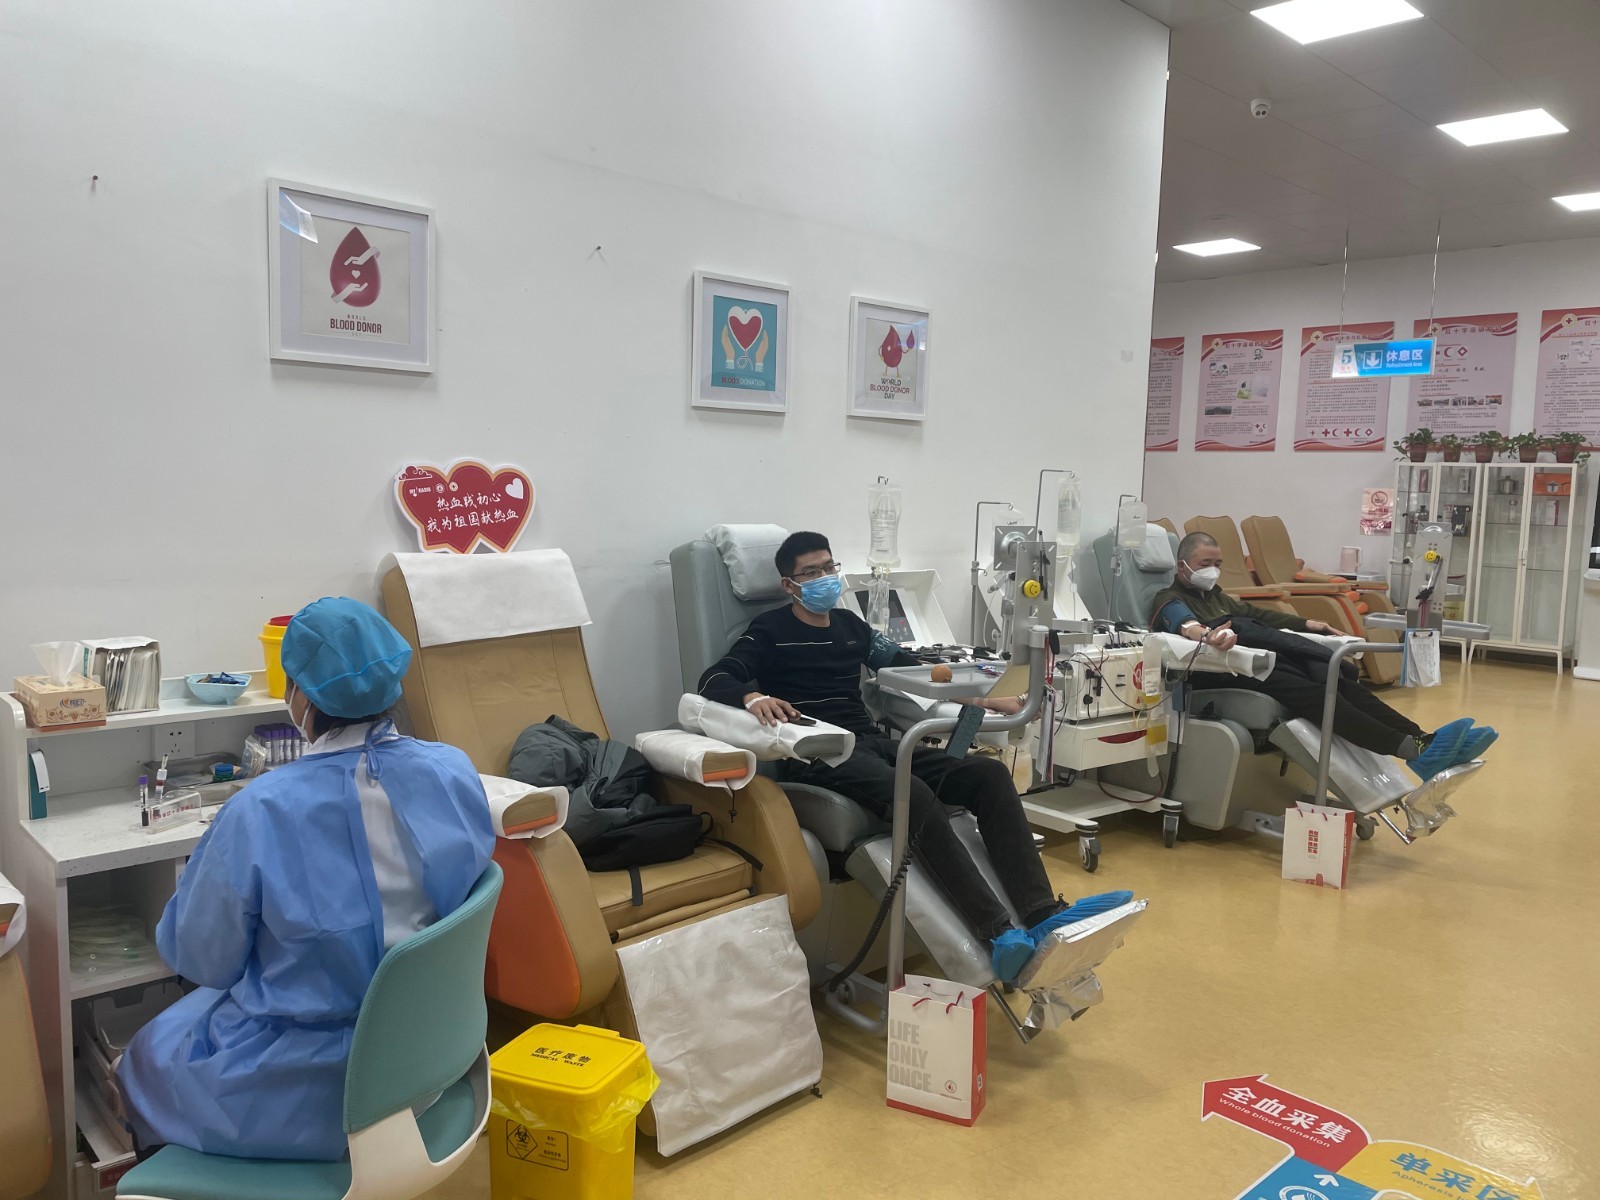 血液库存低于最低保障线 郑州献血点延长服务时间